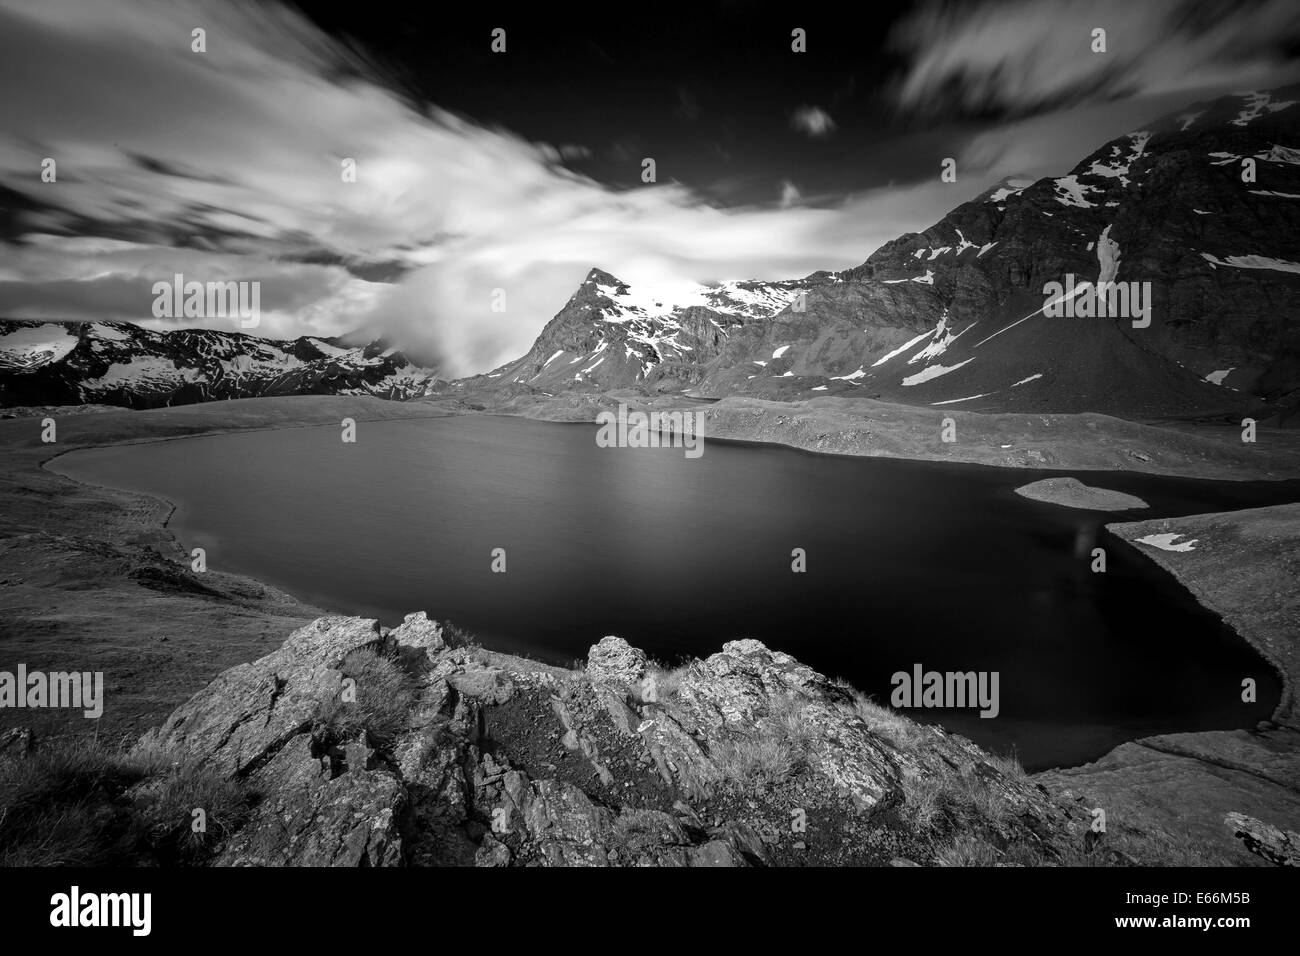 Luce del sole e cielo nuvoloso sul lago Rosset. Il Parco Nazionale del Gran Paradiso. Valle d'Aosta. Alpi italiane. Europa. Paesaggio montano bianco nero. Foto Stock